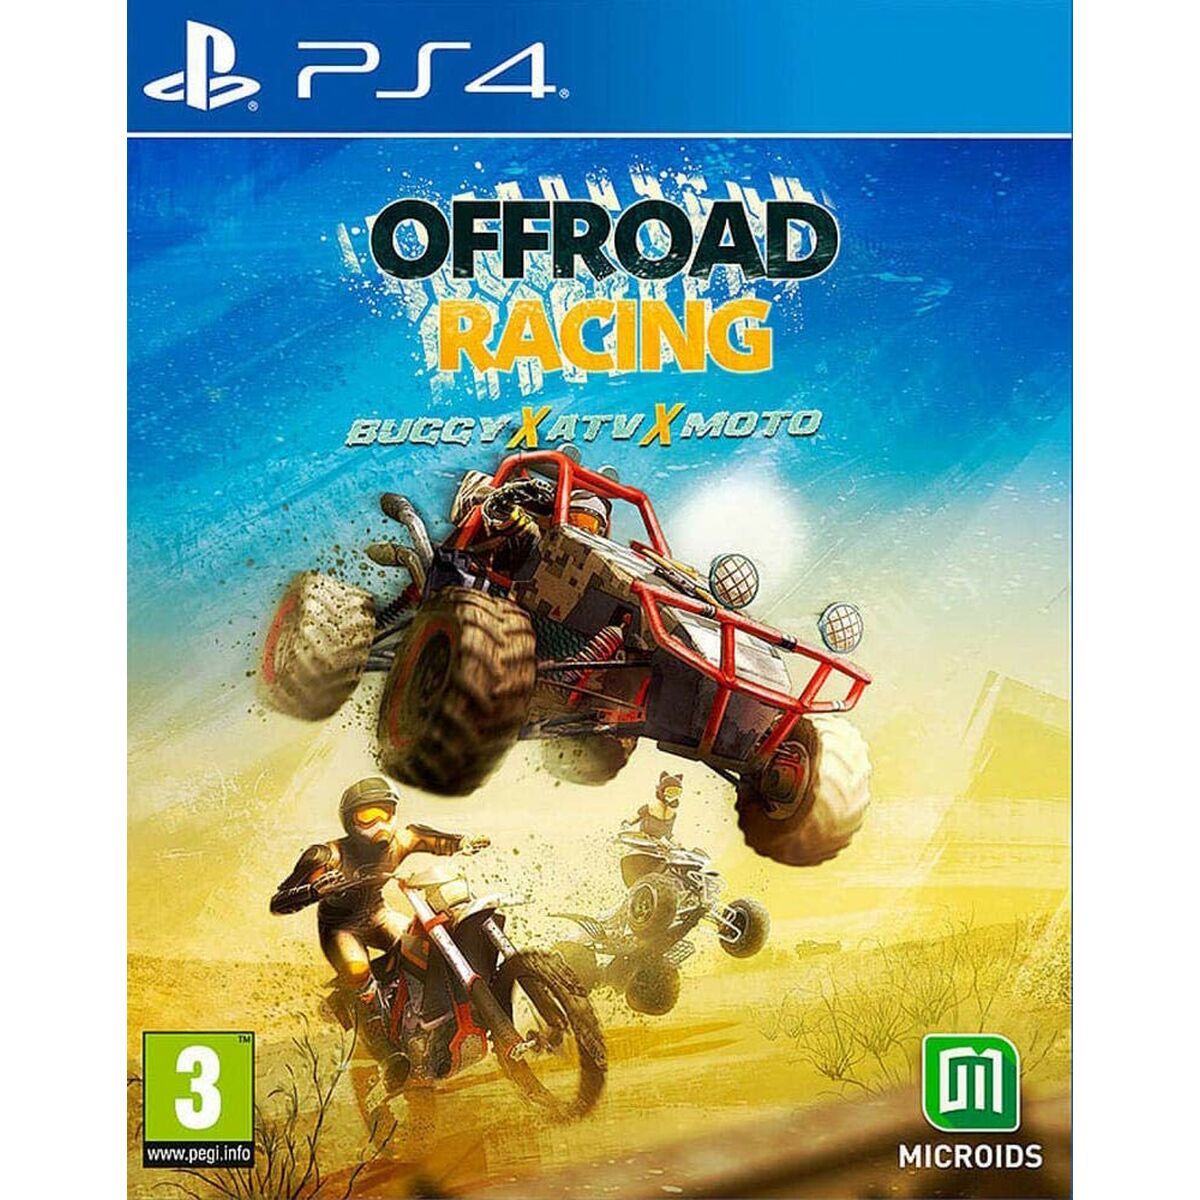 Joc video PlayStation 4 Meridiem Games Off-Road Racing